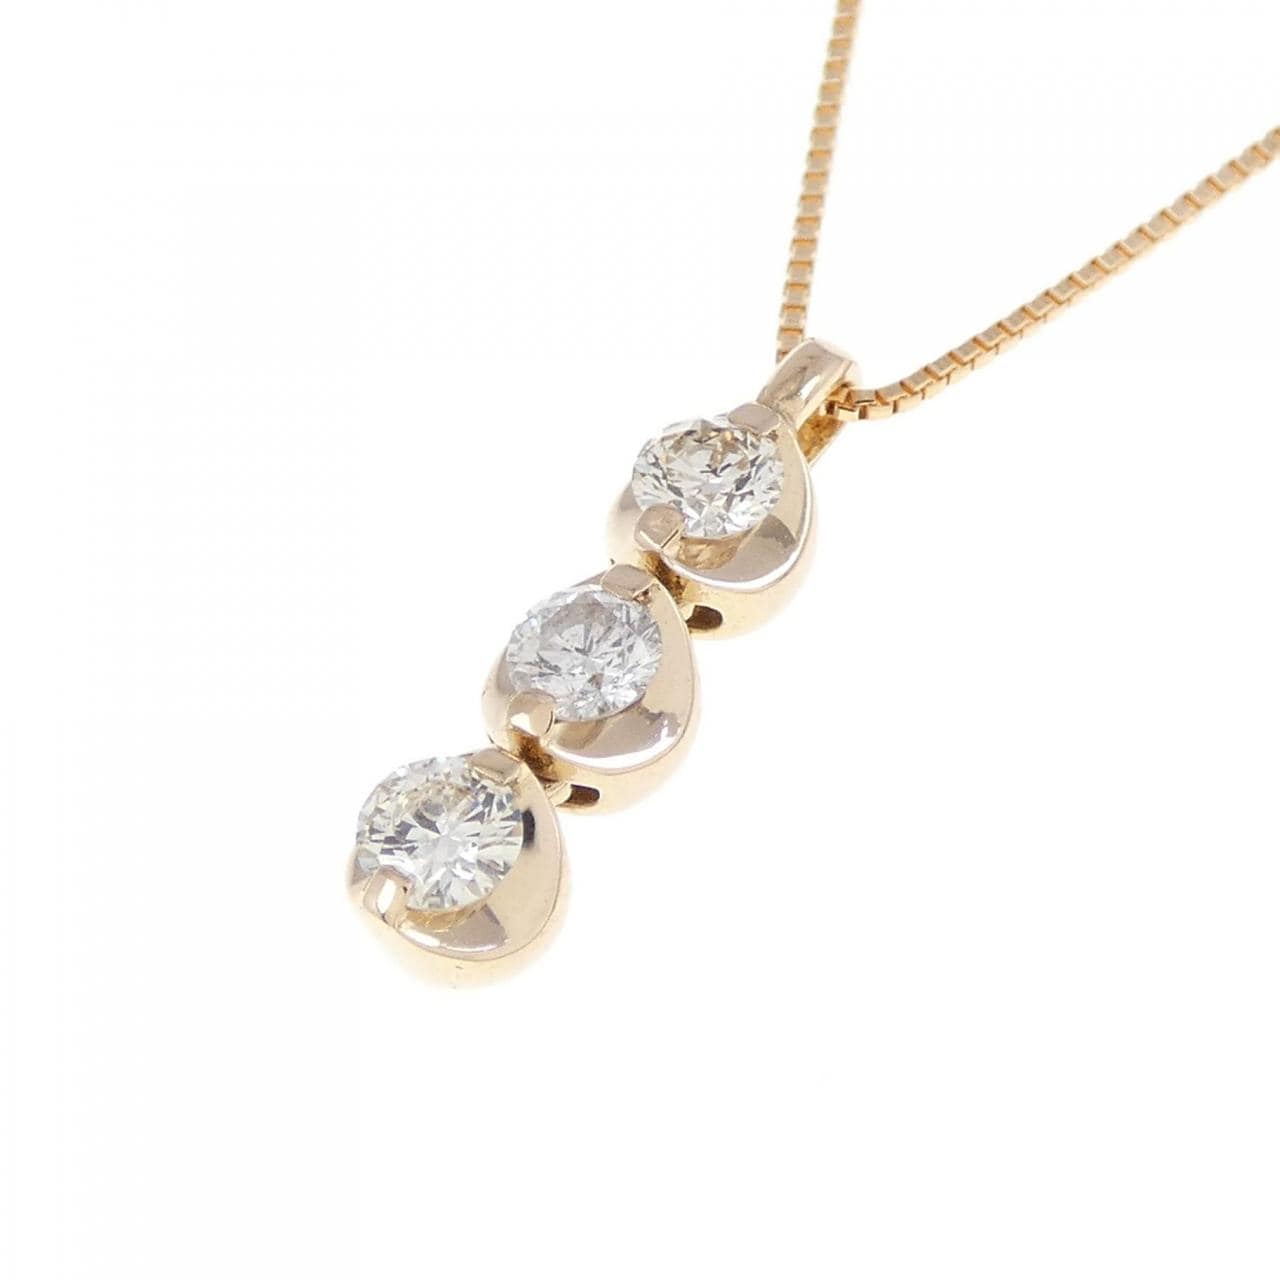 K18PG three stone Diamond necklace 0.32CT